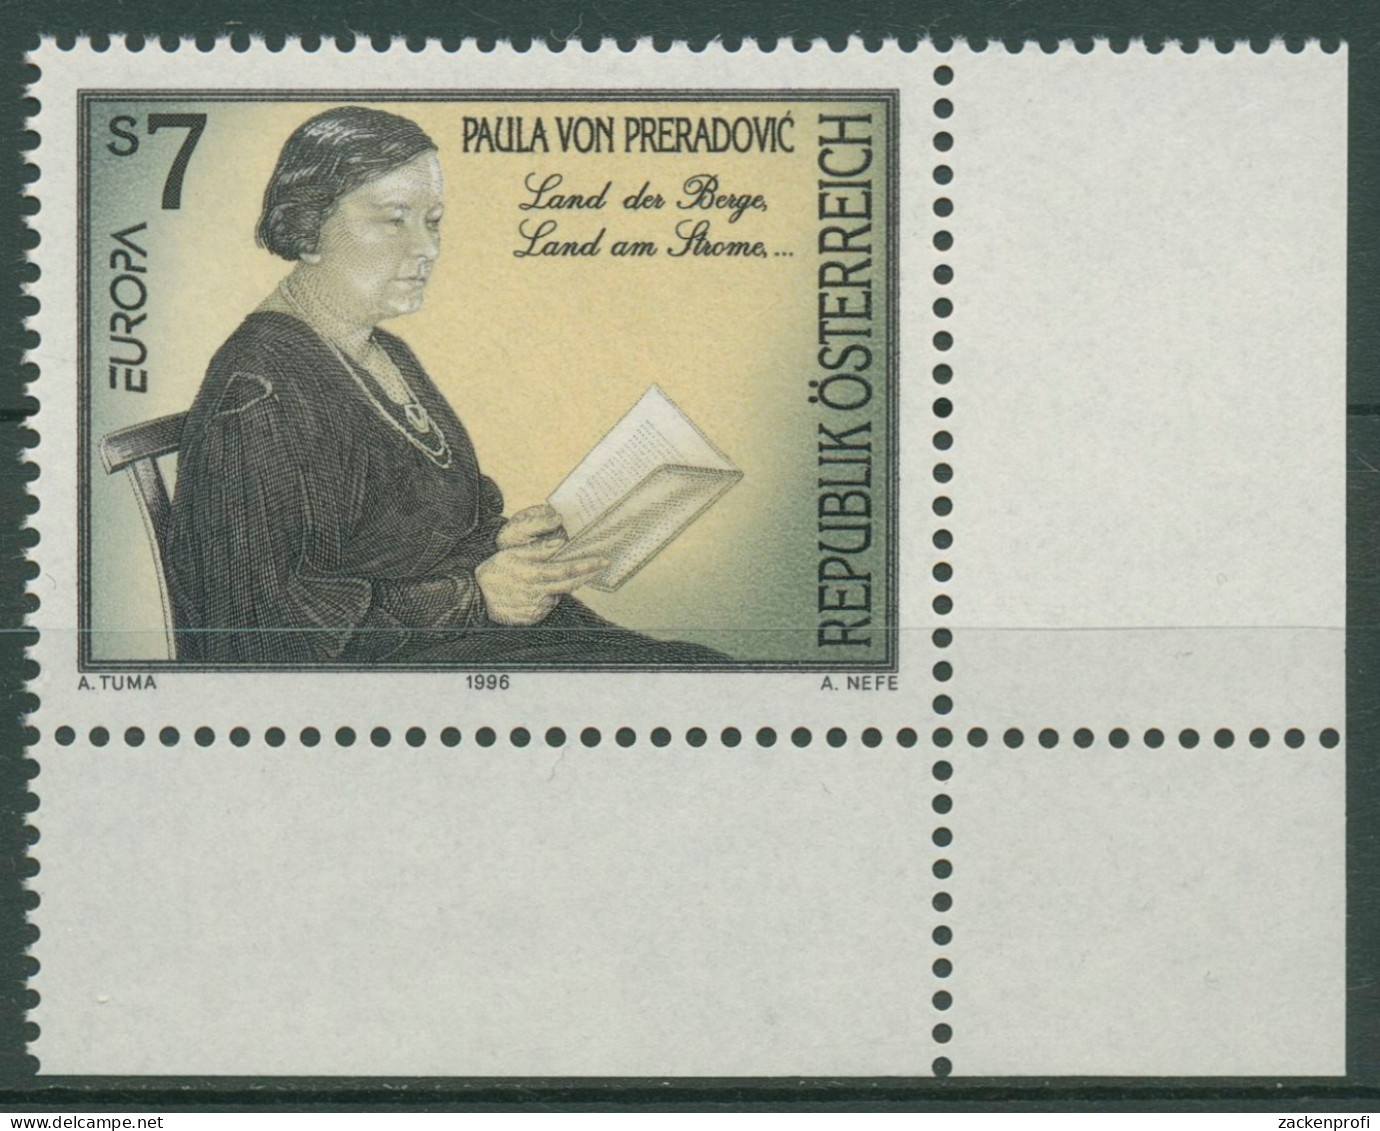 Österreich 1996 Europa CEPT Berühmte Frauen P.v.Preradovic 2189 Ecke Postfrisch - Unused Stamps